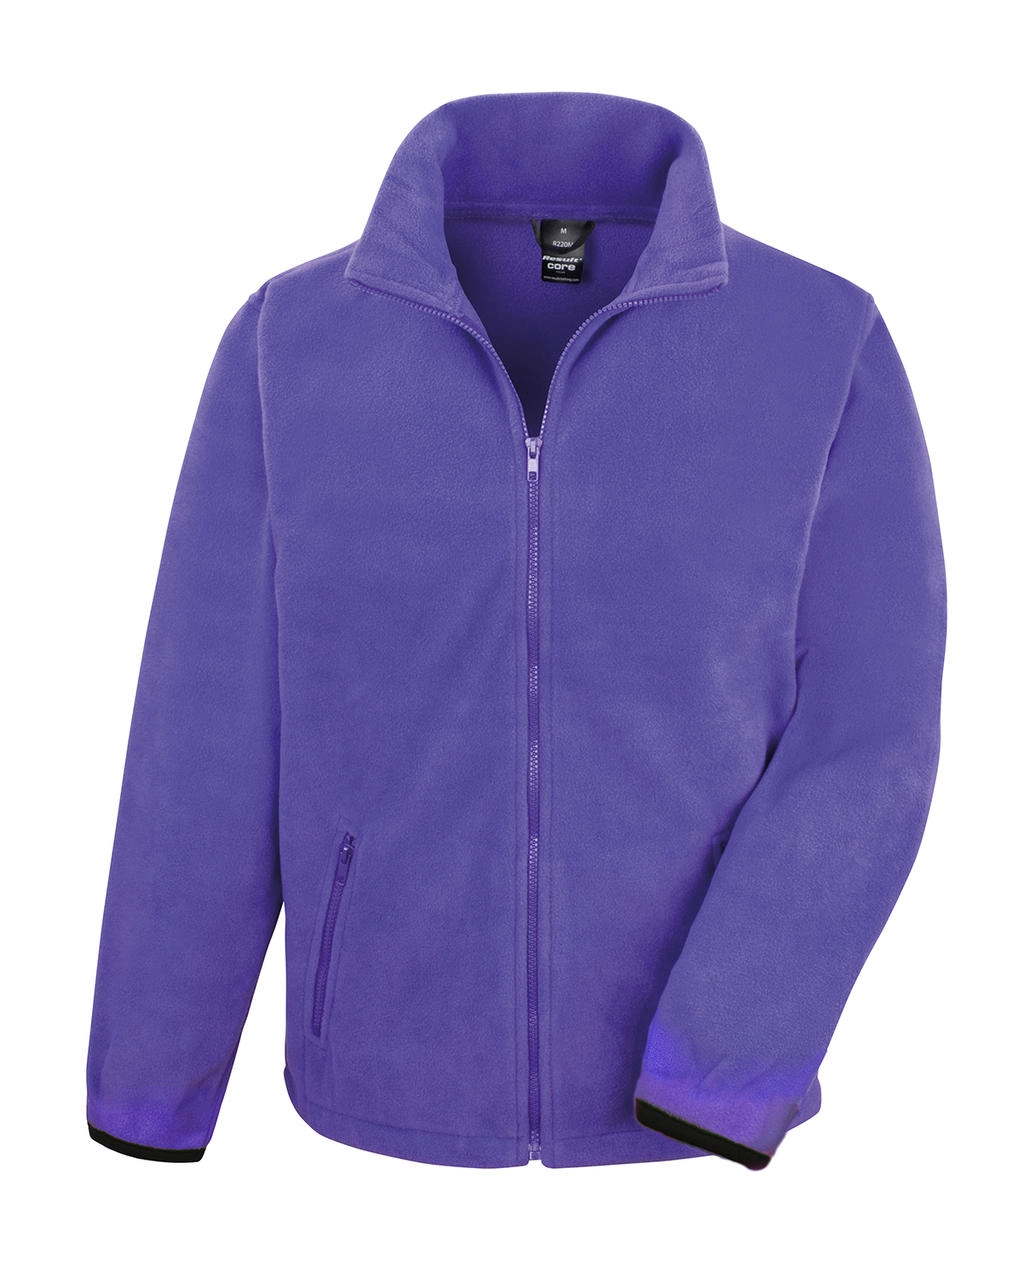 Fashion Fit Outdoor Fleece zum Besticken und Bedrucken in der Farbe Purple mit Ihren Logo, Schriftzug oder Motiv.